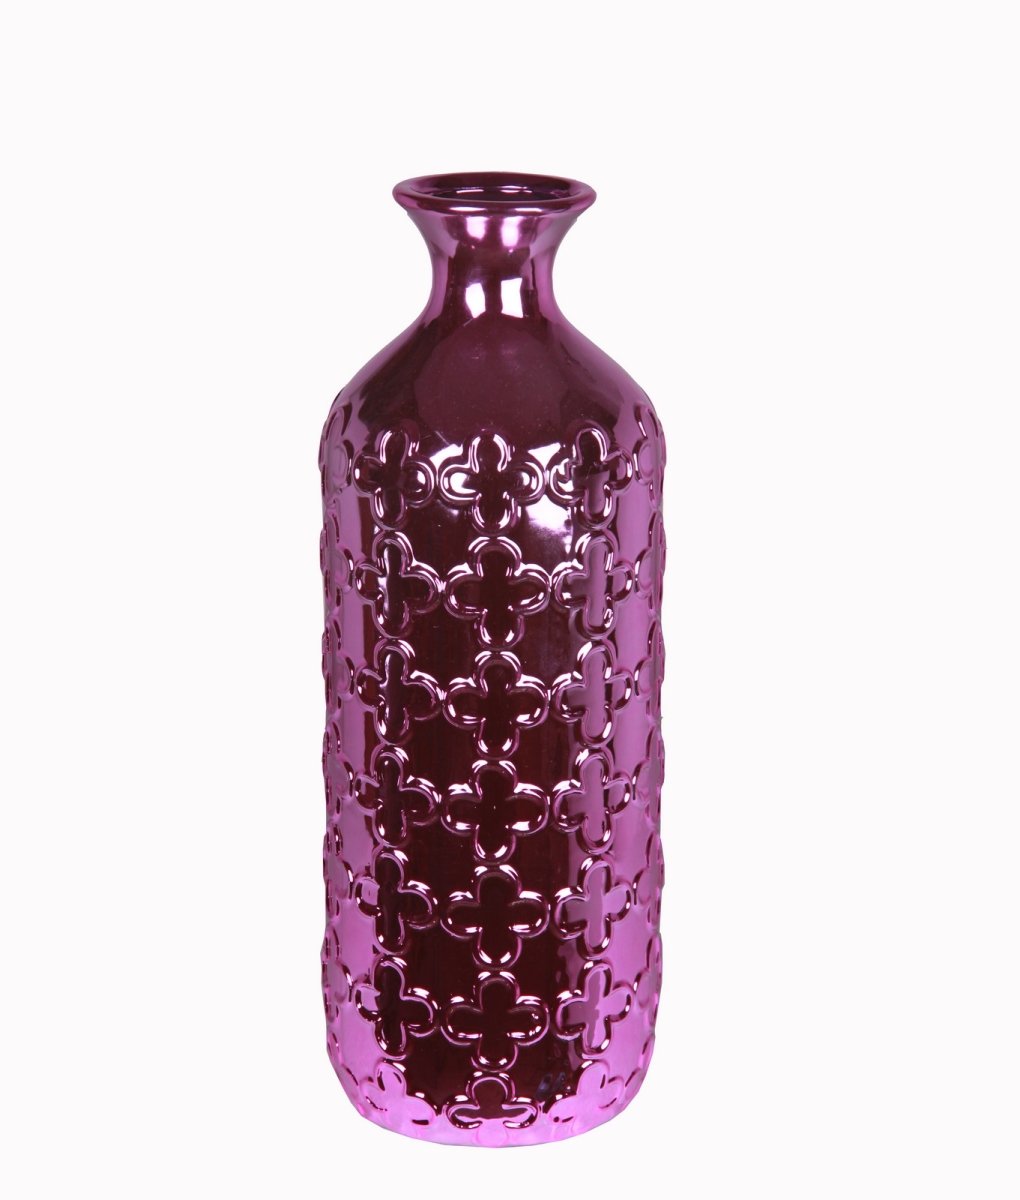 84072 6.5 X 6.5 X 16.5 In. Ceramic Vase, Metallic Purple - Large